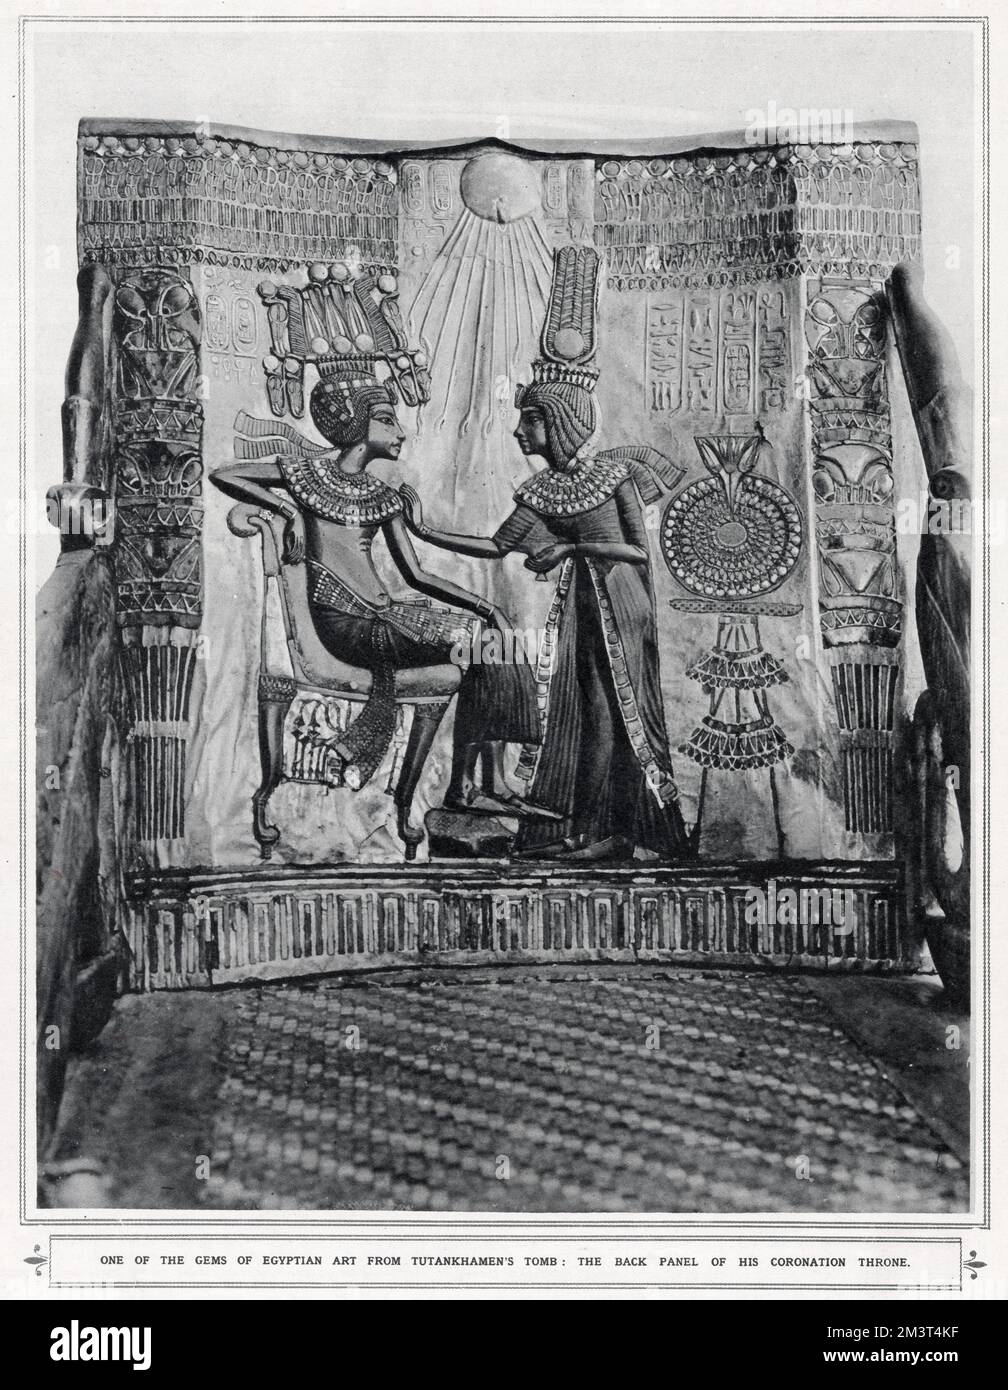 Una delle gemme dell'arte egizia della tomba di Tutankhamon: Il pannello posteriore del suo trono di incoronazione. Foto Stock